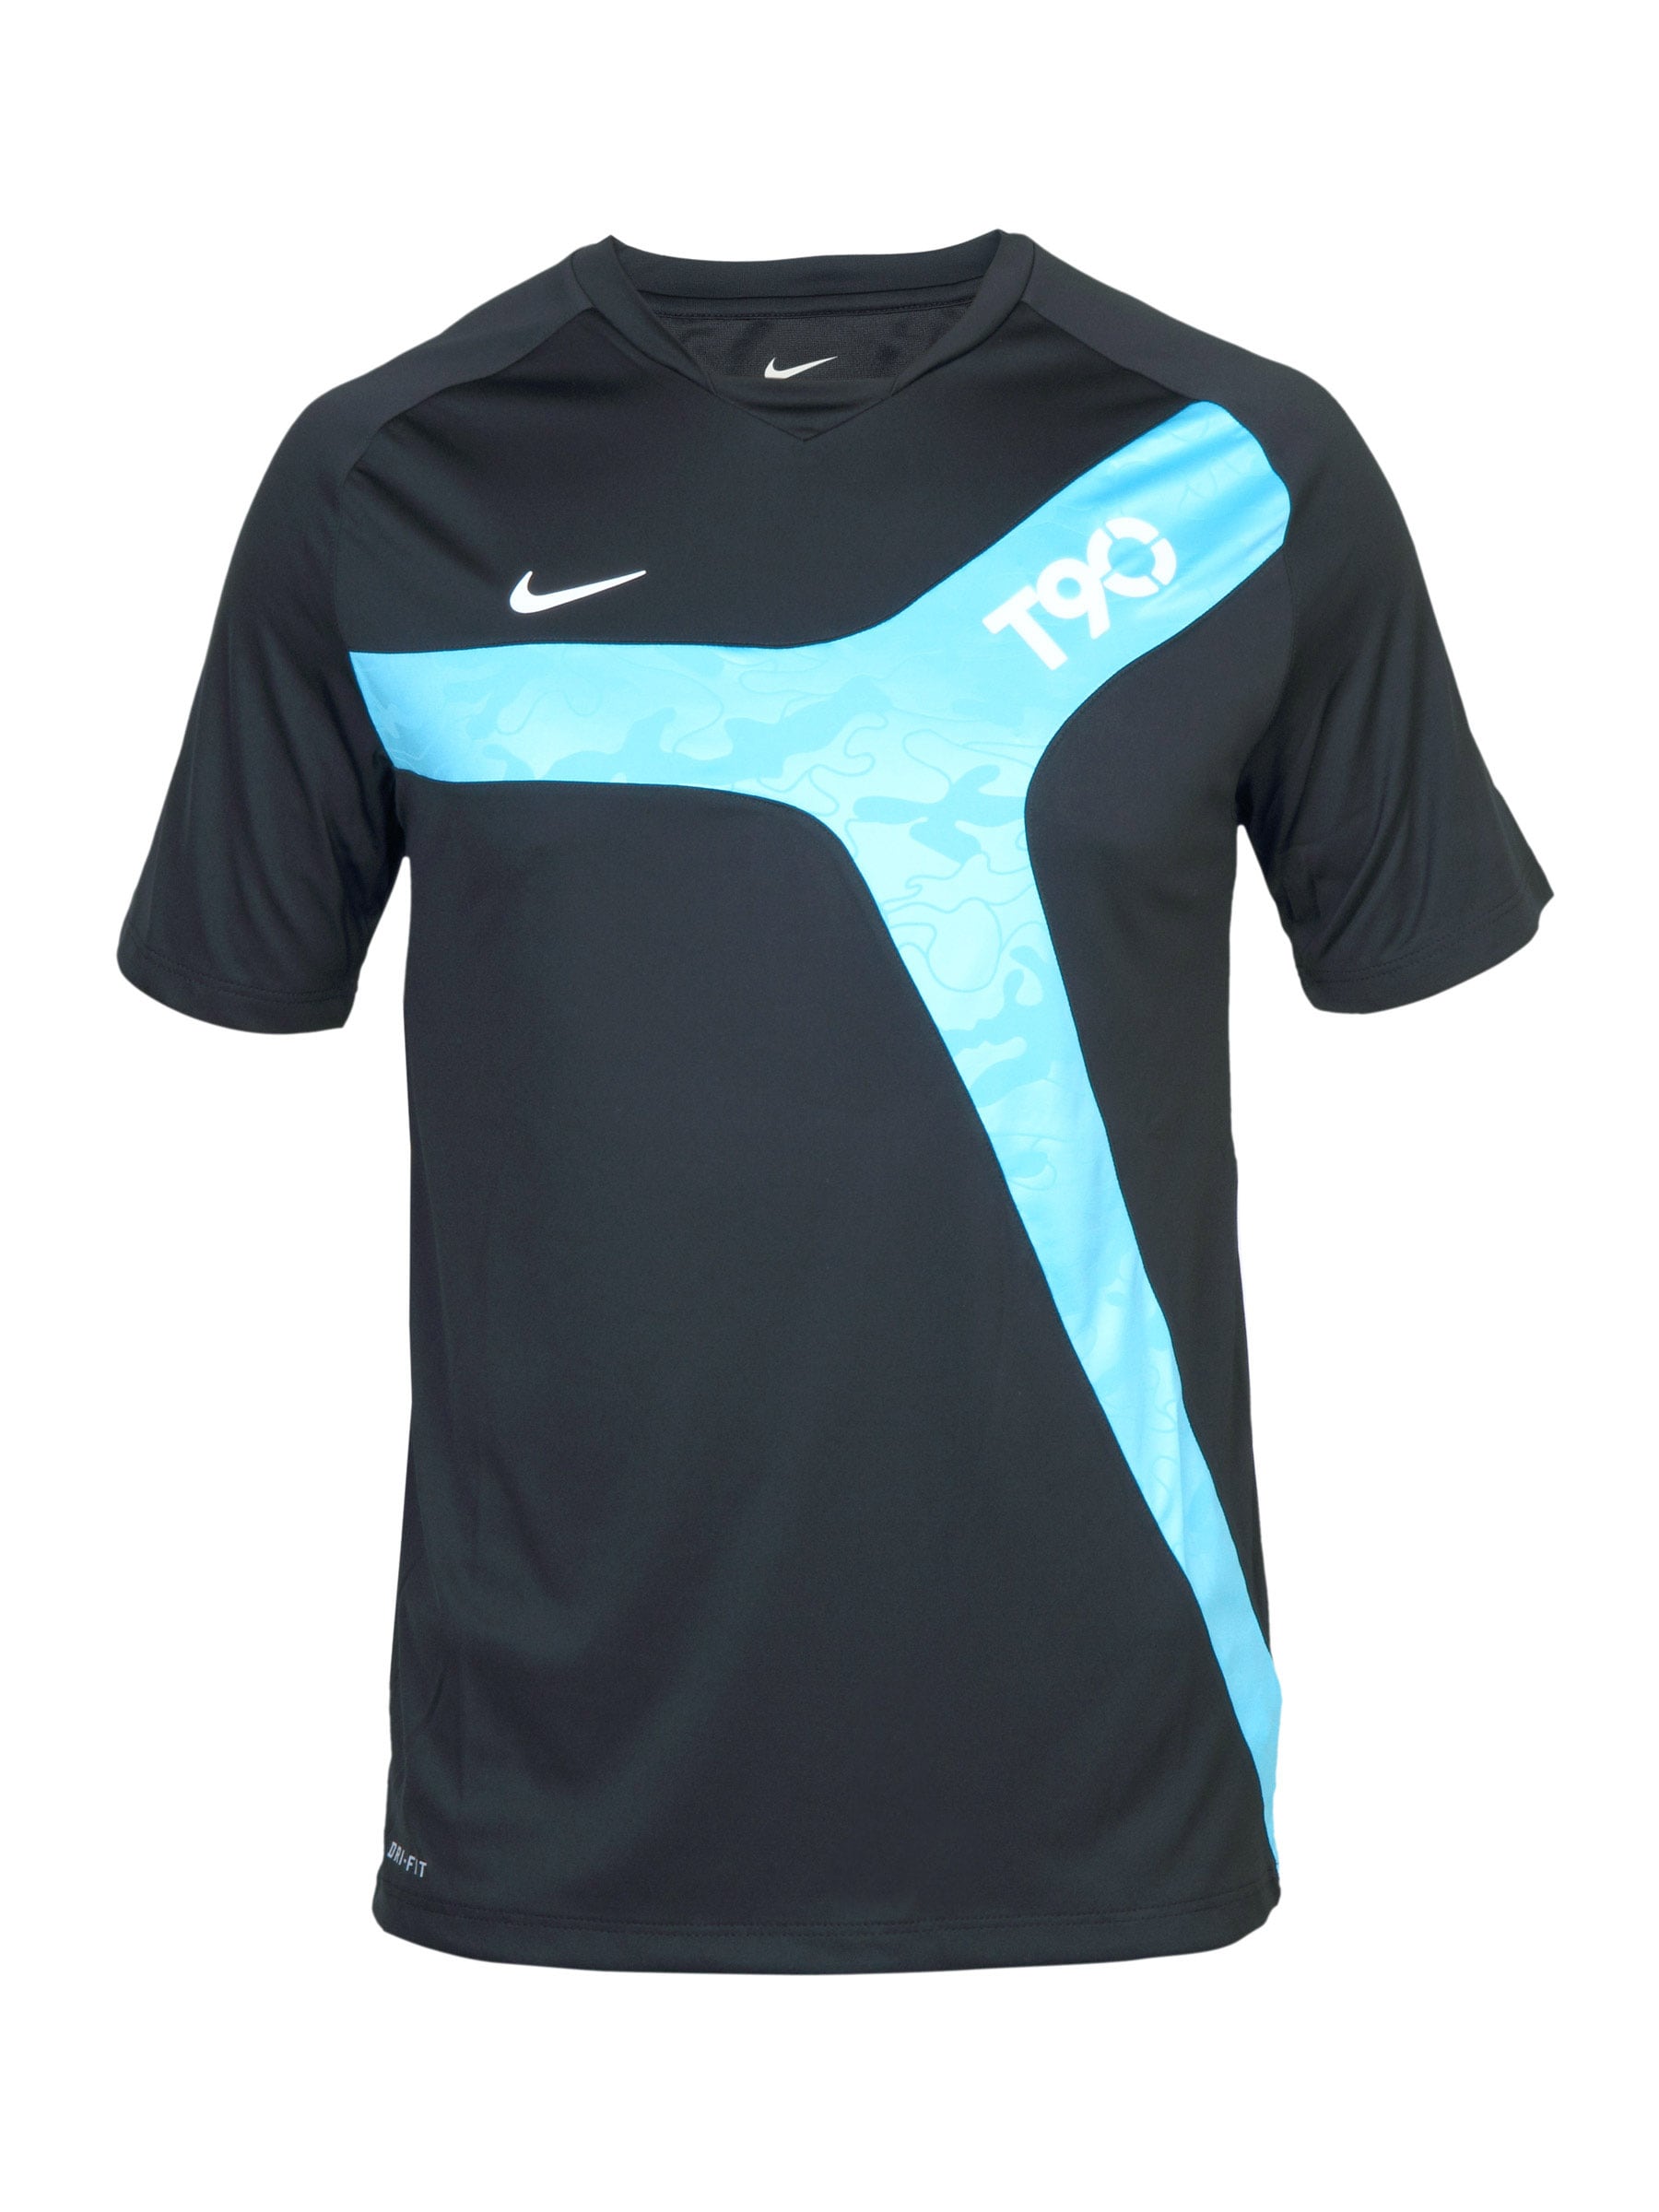 Nike Men's Black Blue T-shirt